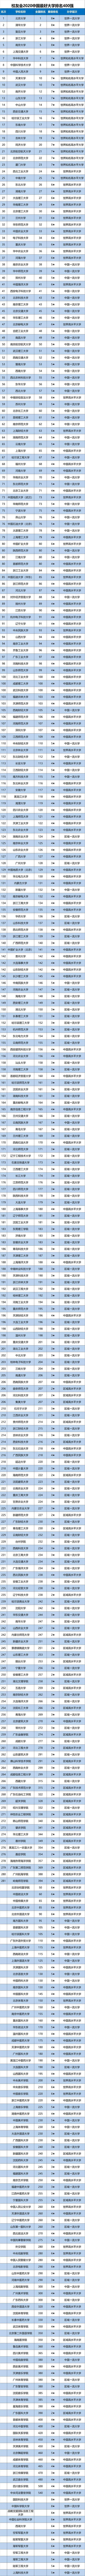 大学排名2020最新排名_最新发布2020年中国最好大学排名,2020年中国最好大学